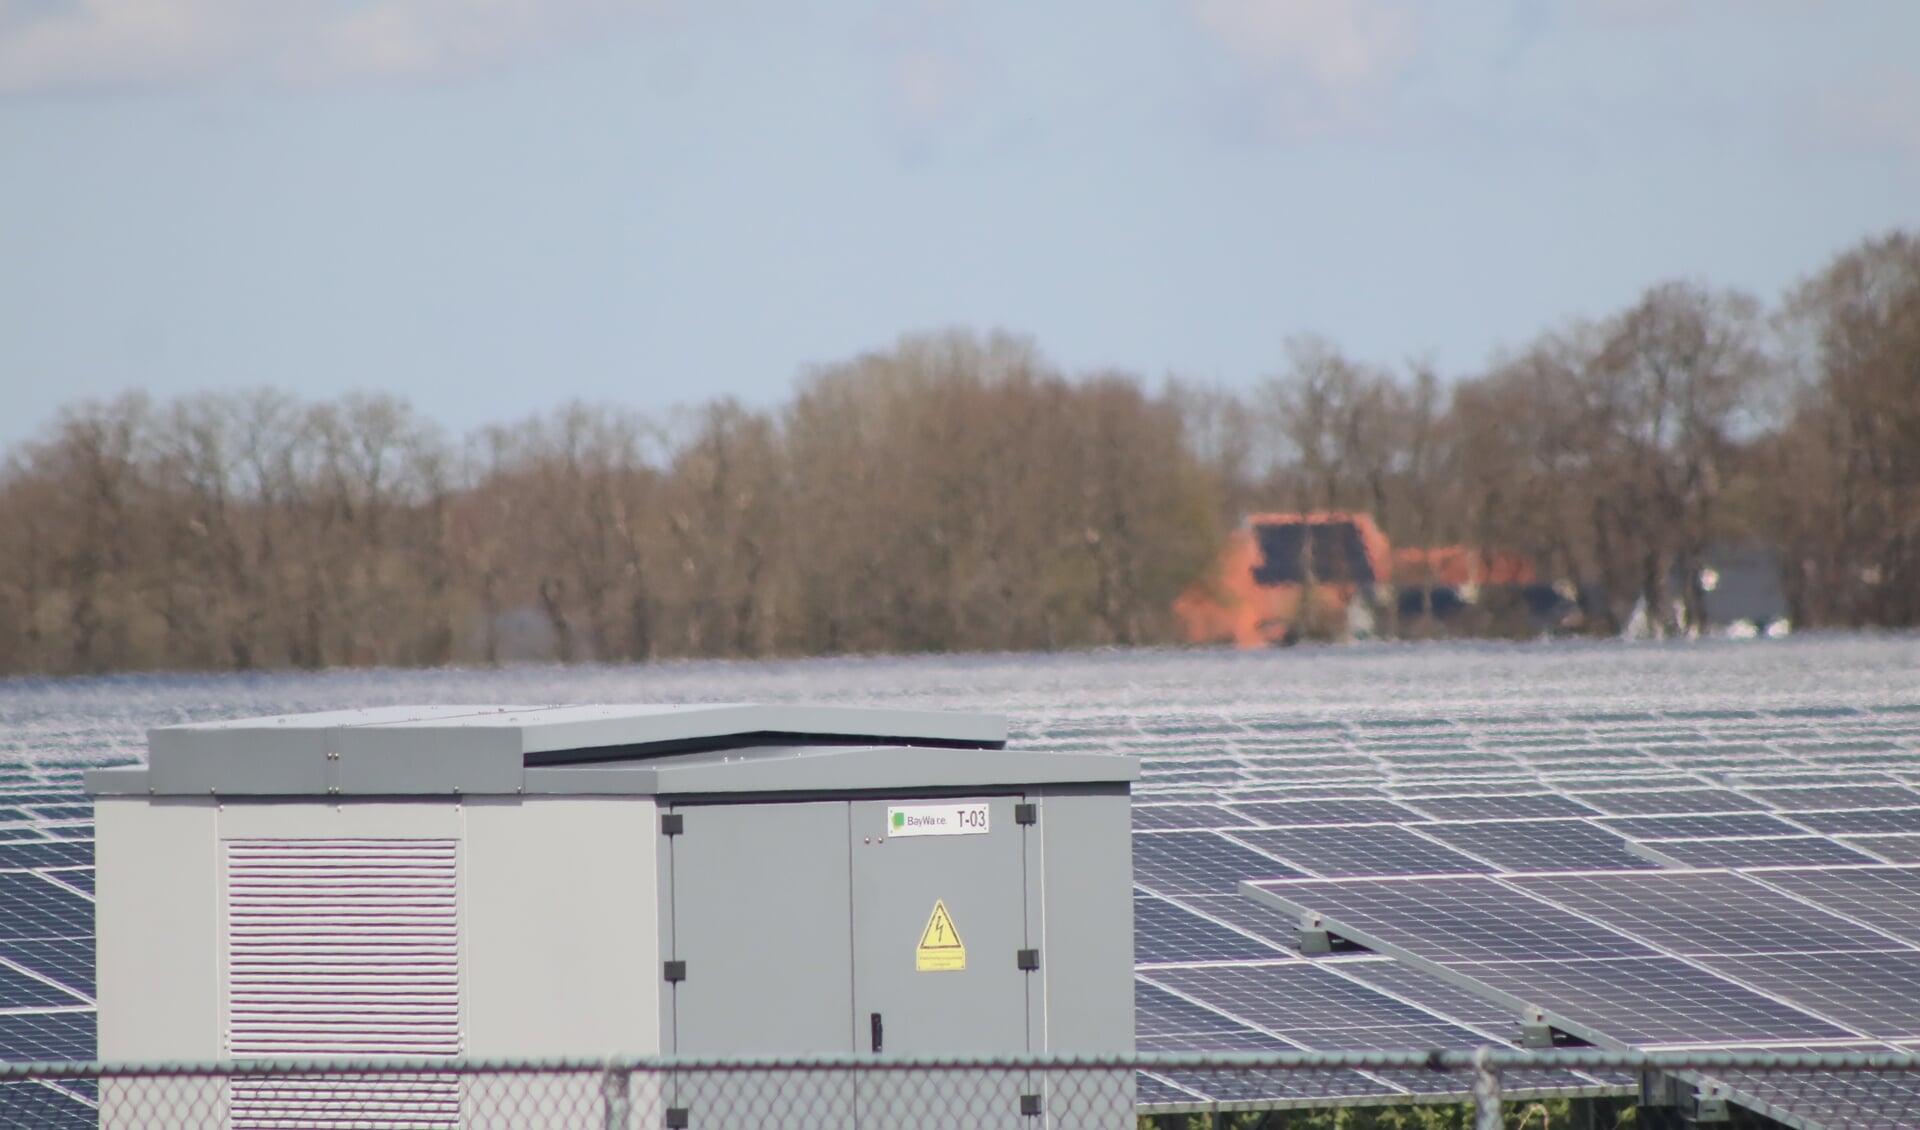 Zonnepanelenpark in Zuidoostelijk Friesland, met op de achtergrond een boerderij met zonnepanelen op het dak.